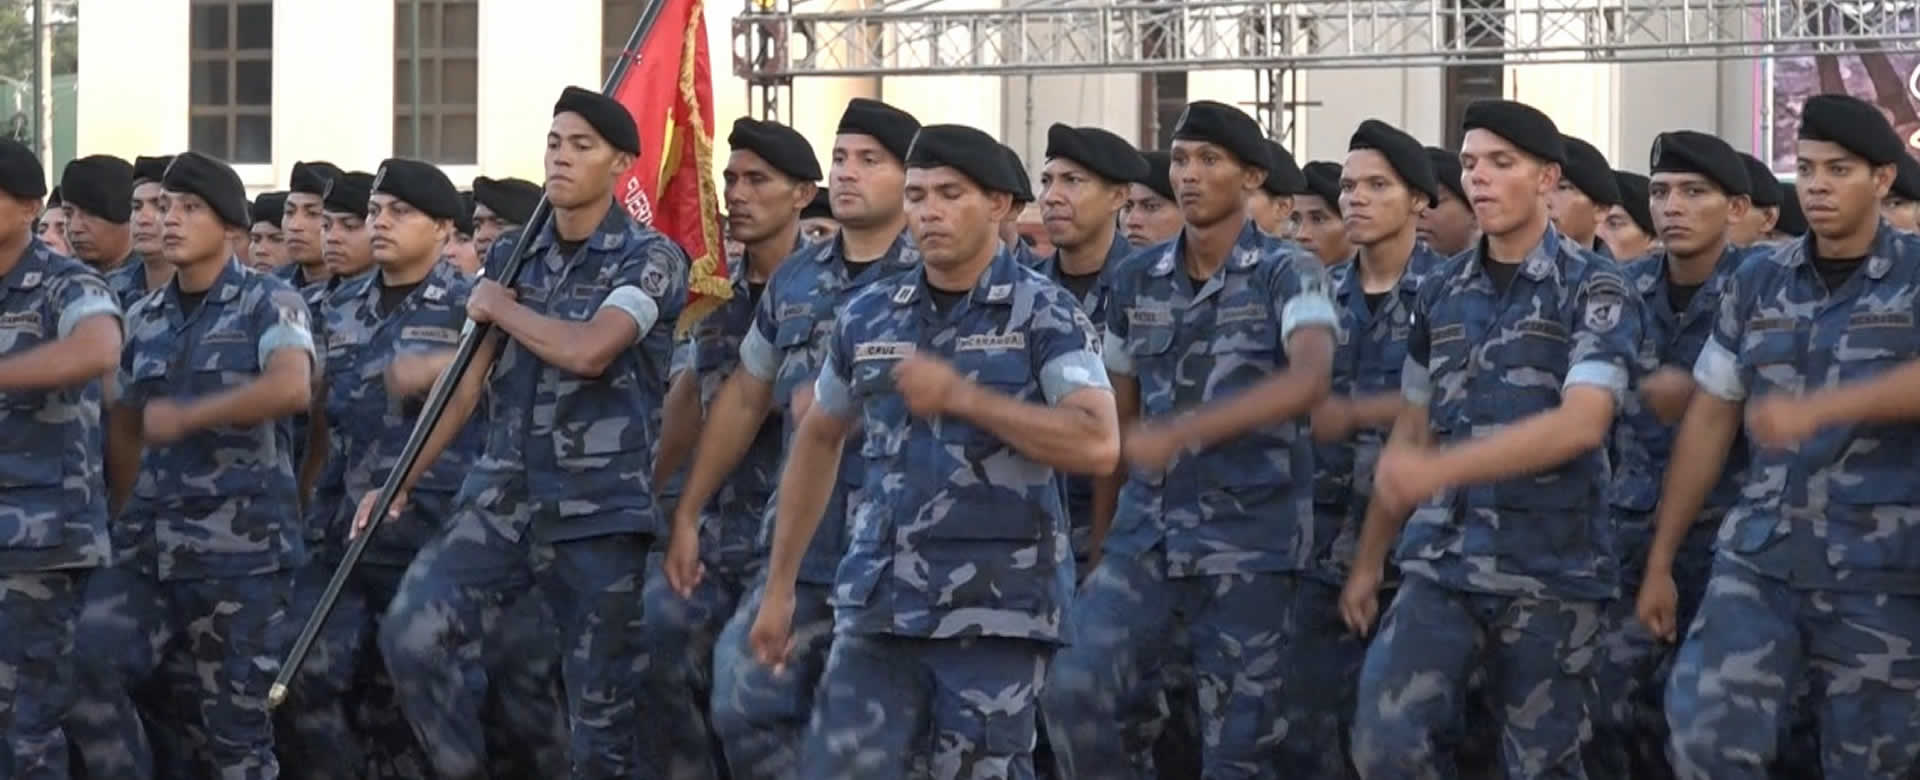 Ejército de Nicaragua realiza práctica para celebración de su 40 aniversario